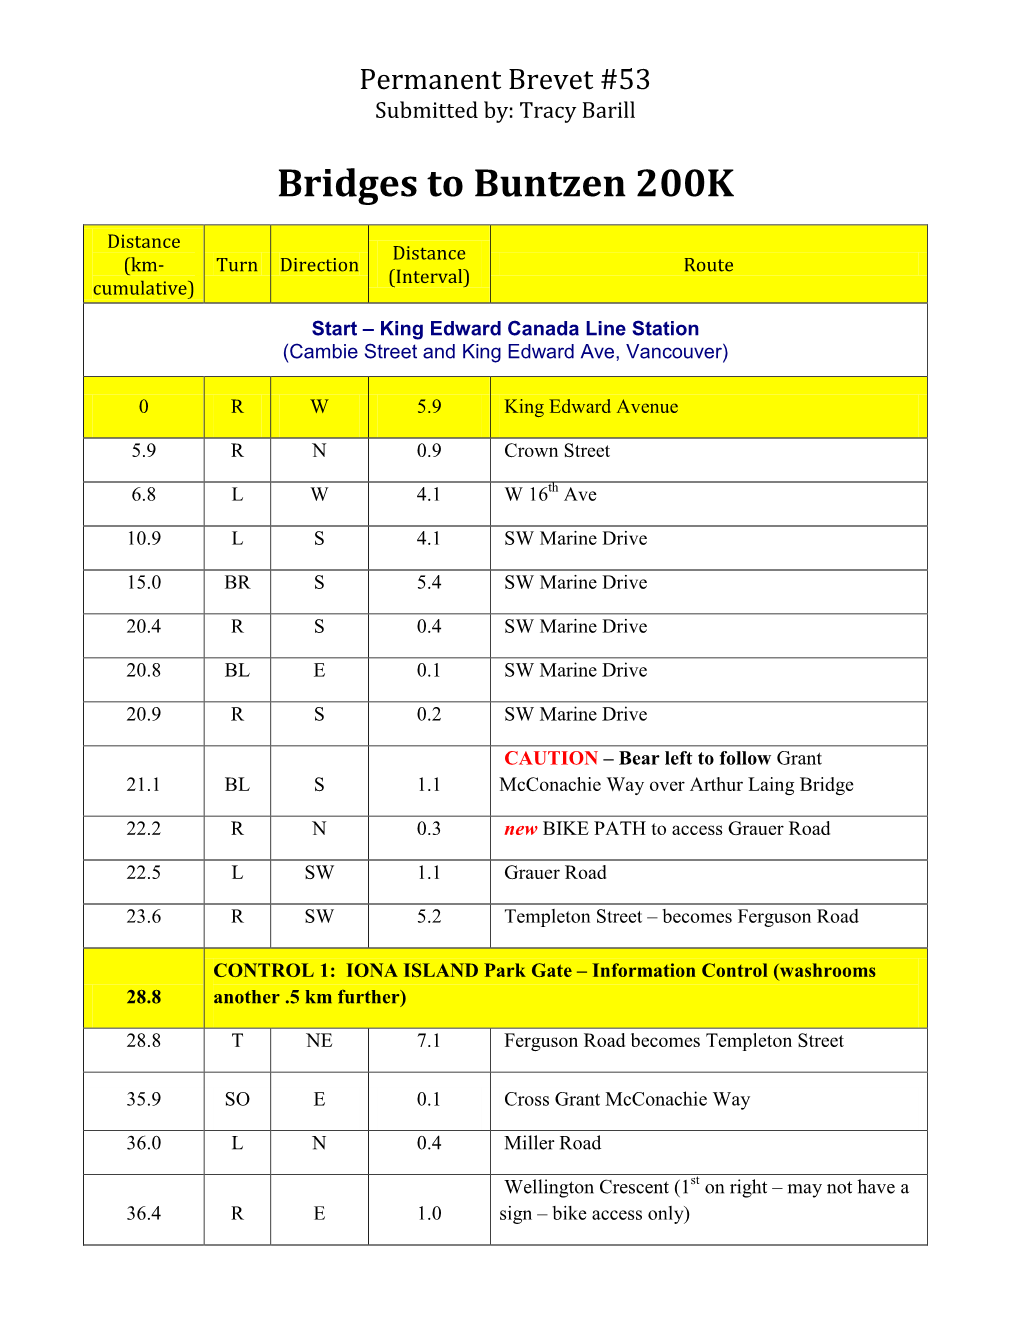 Bridges to Buntzen 200K